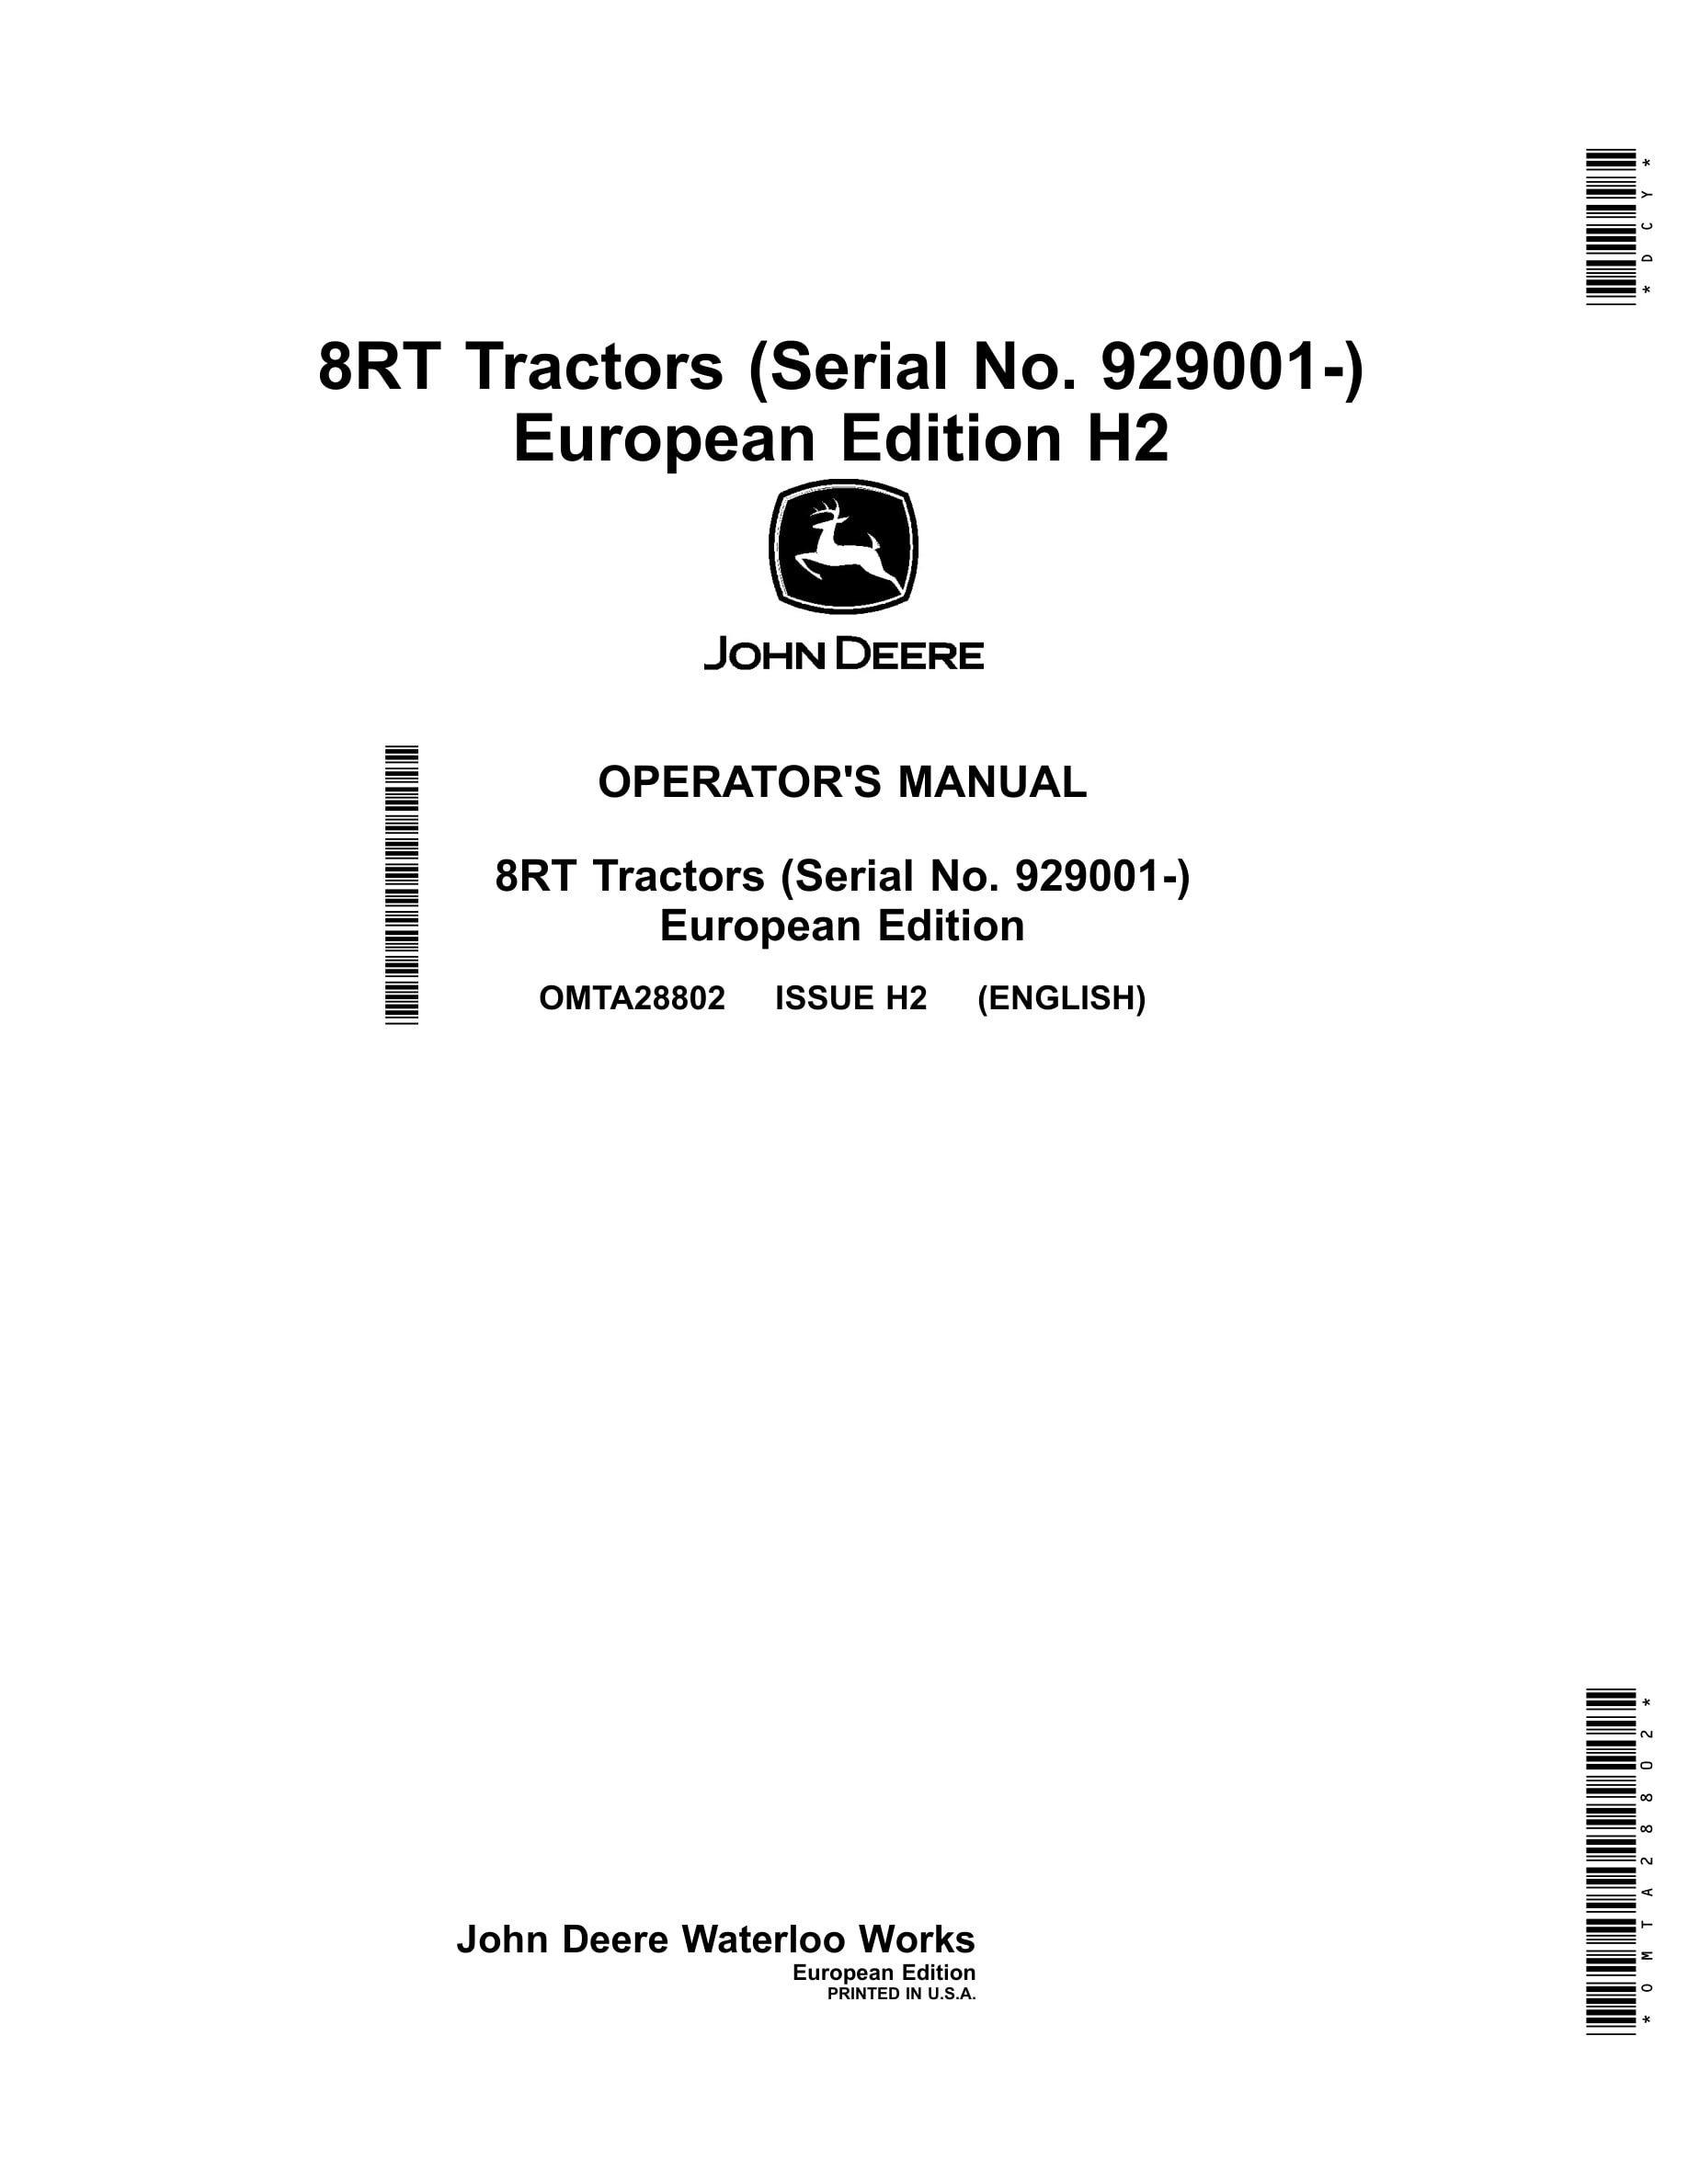 John Deere 8rt Tractors Operator Manuals OMTA28802-1